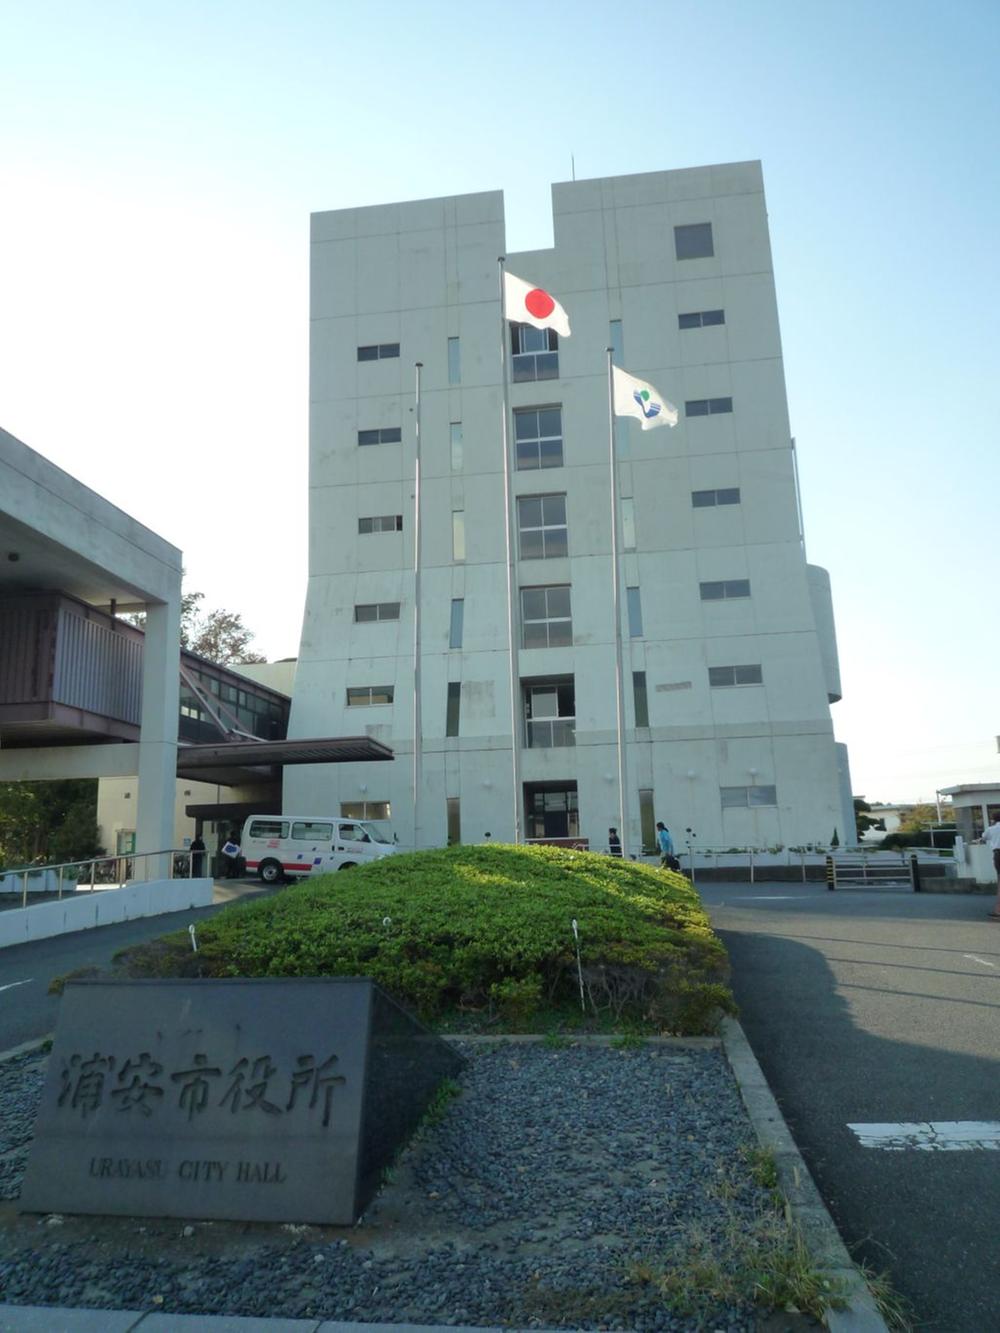 Government office. 553m to Urayasu city hall